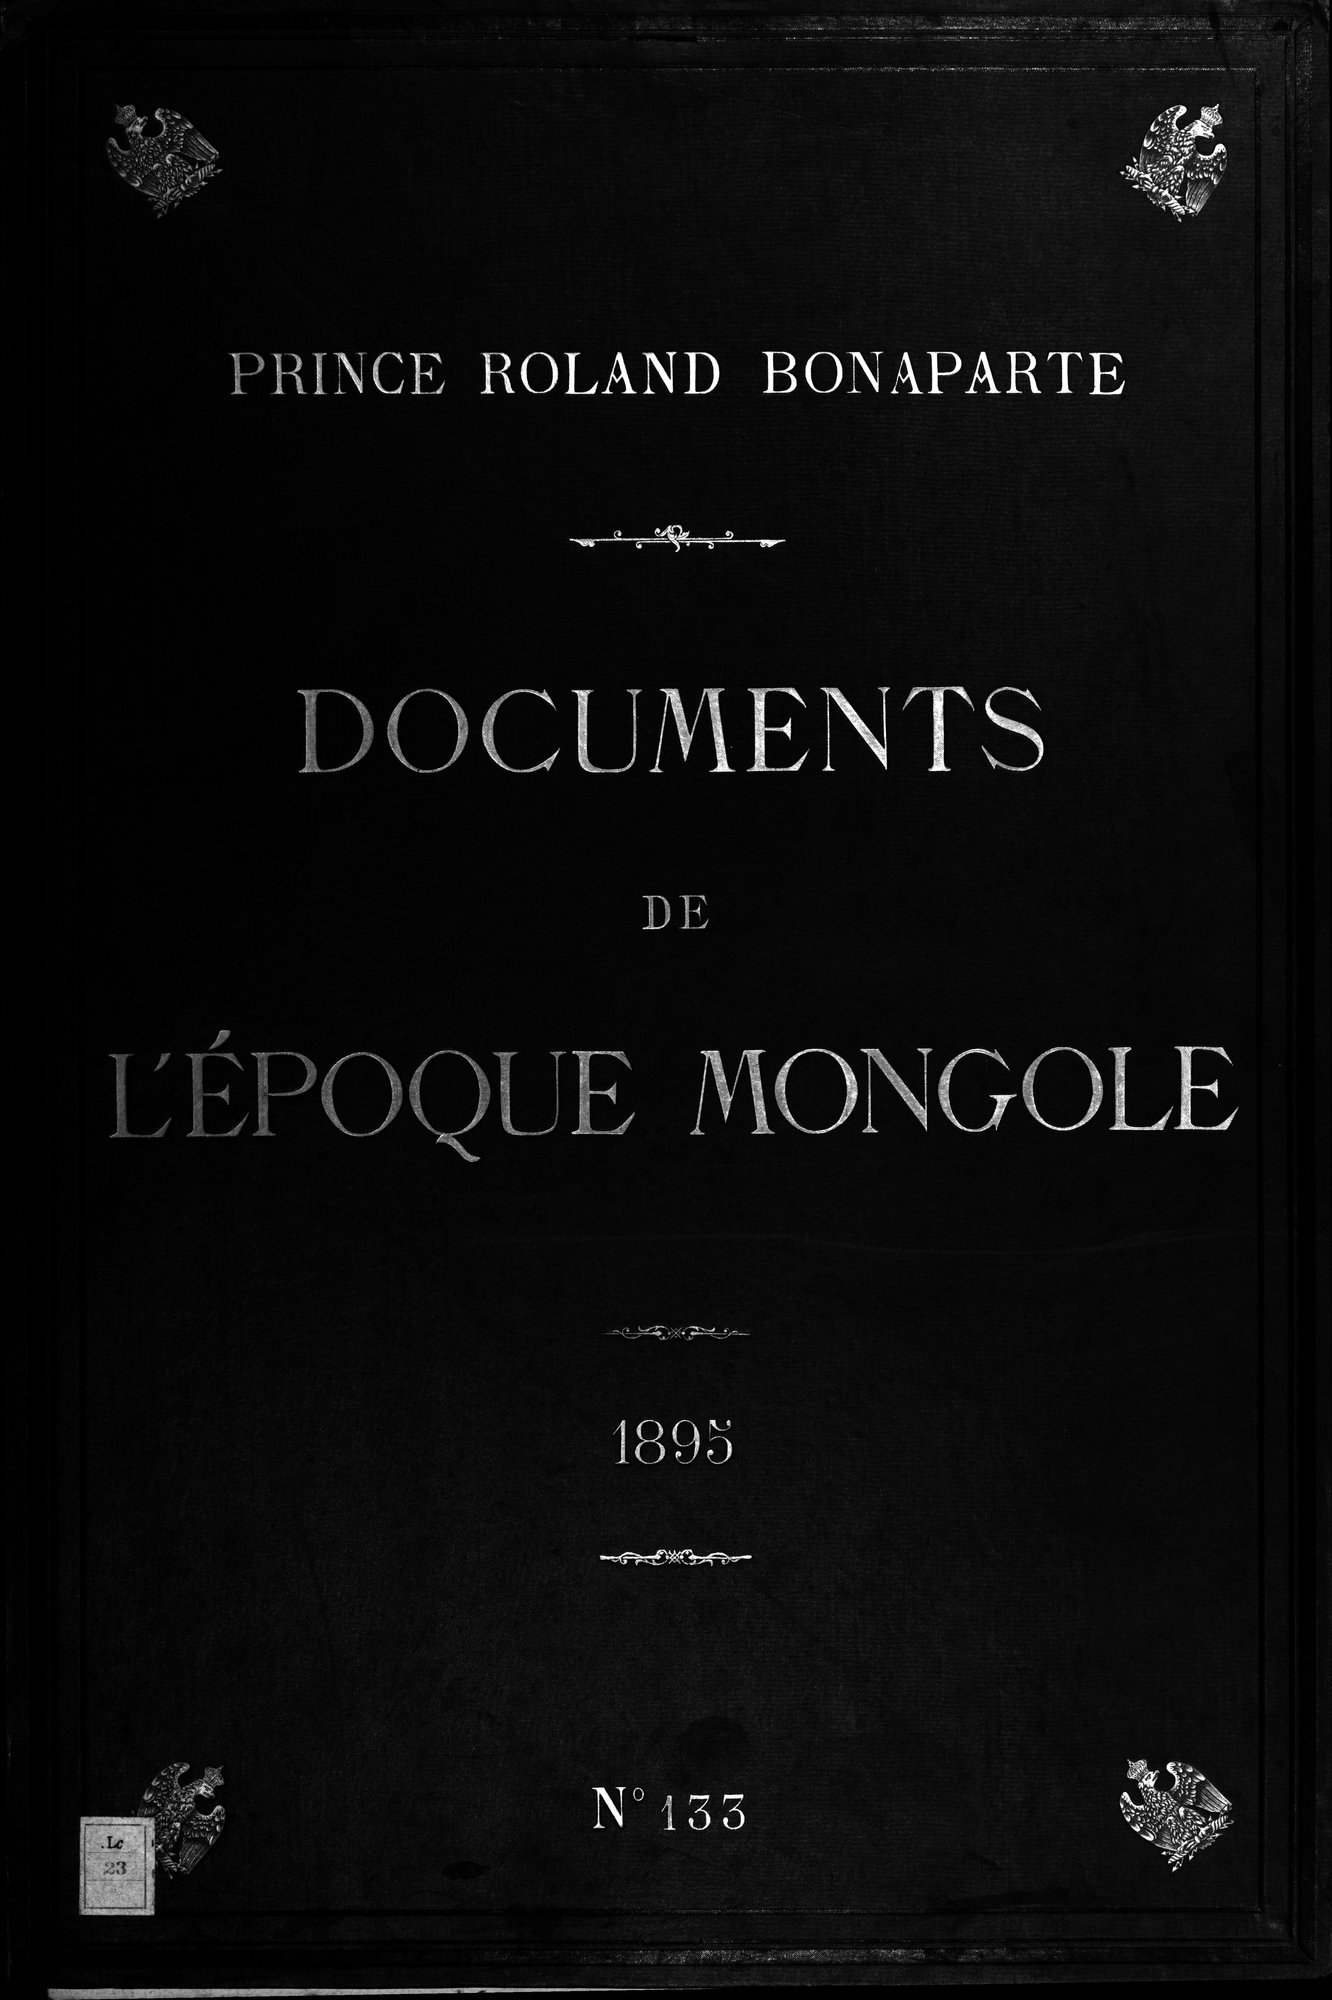 Documente de l'Époque Mongole des XIIIe et XIVe Siècle : vol.1 / Page 1 (Grayscale High Resolution Image)